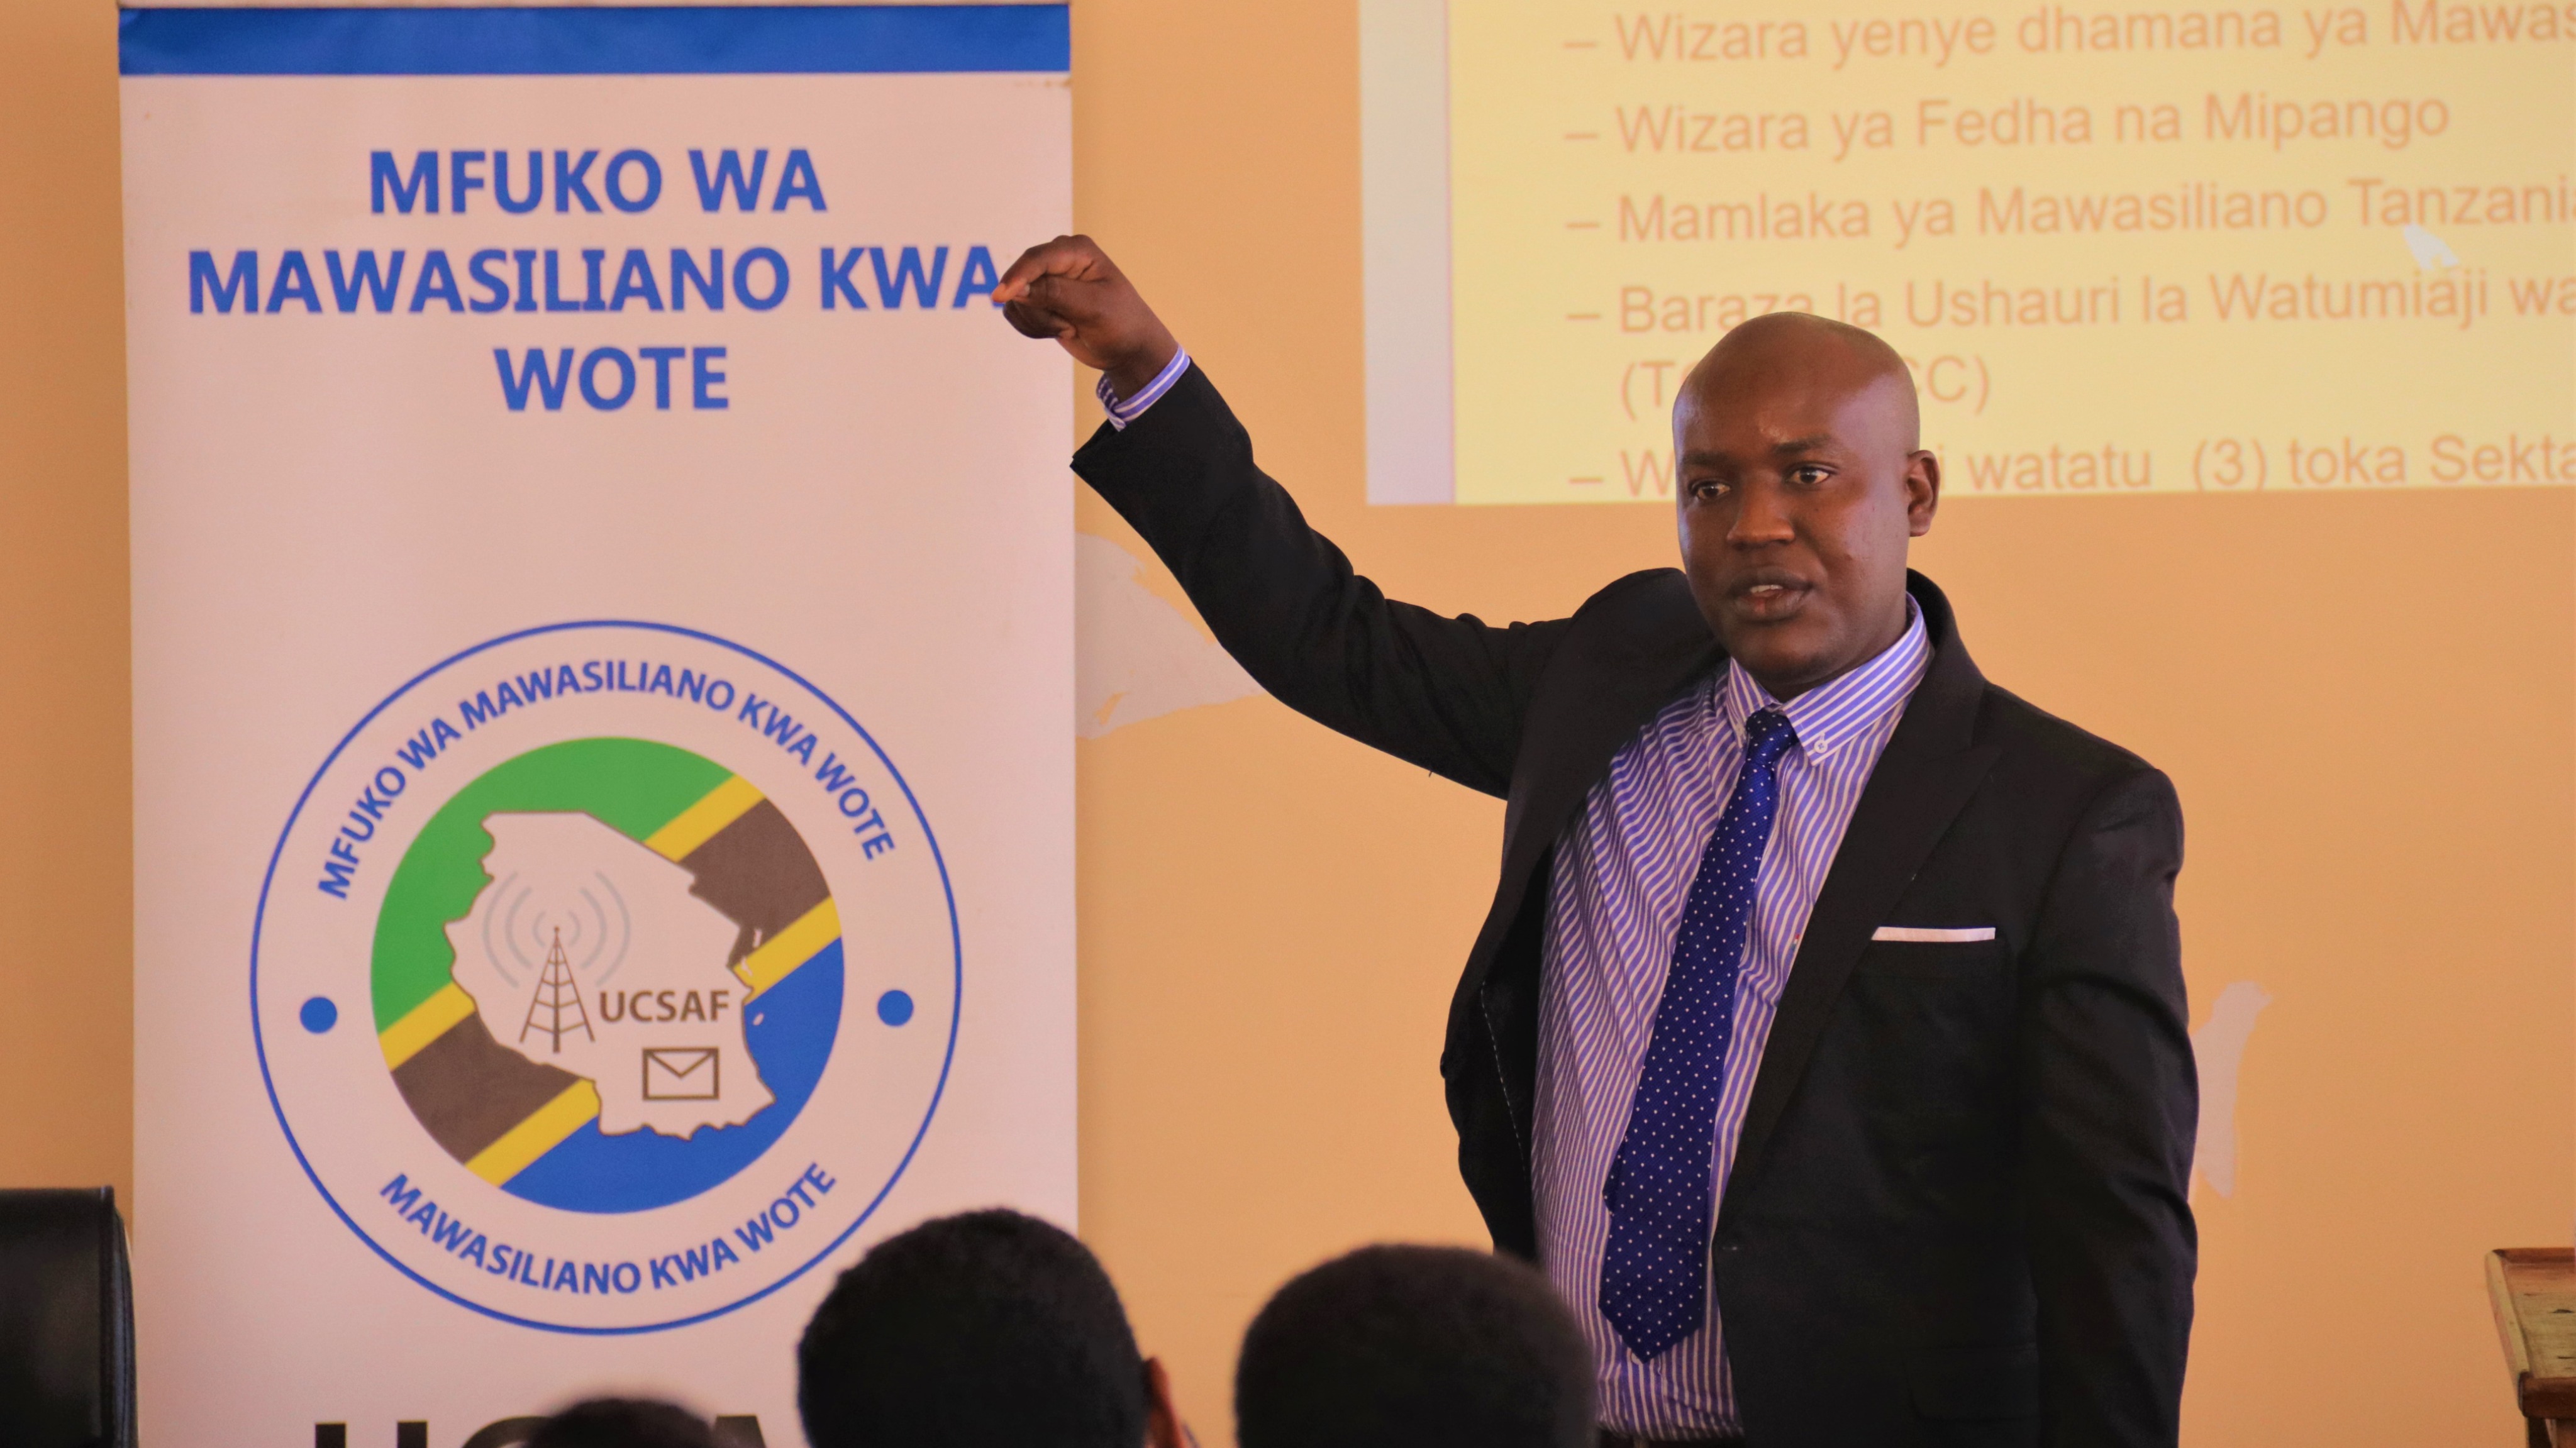 UCSAF yawataka wadau kuchangamkia fursa zinazotolewa na Mfuko huo.